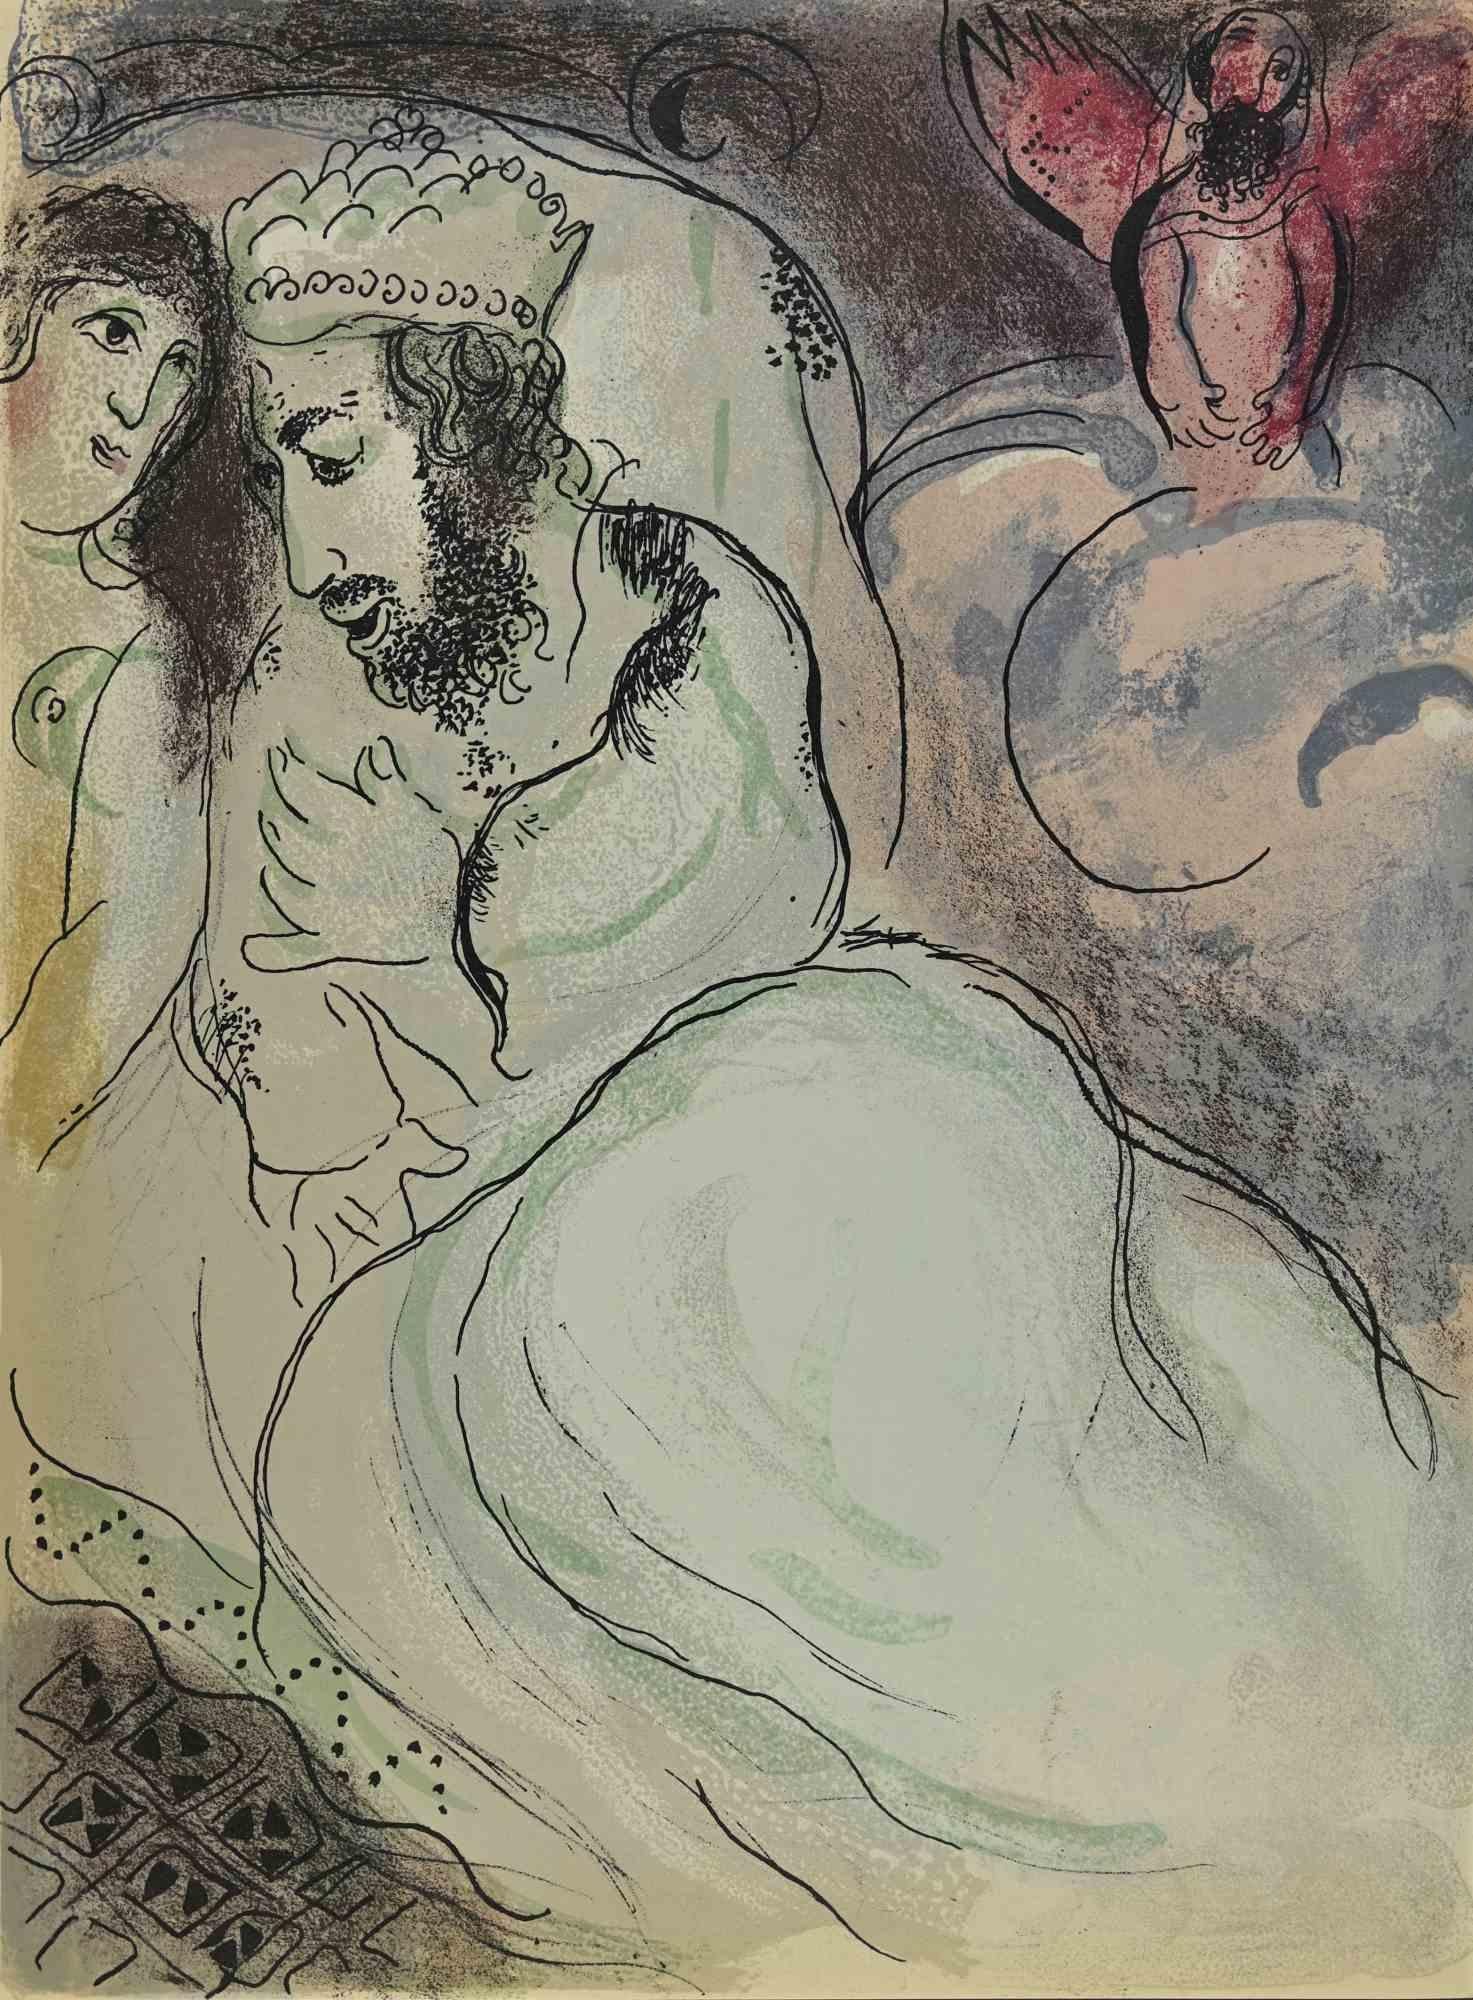 Abimelech ist ein Kunstwerk aus der Serie "Die Bibel" von Marc Chagall aus dem Jahr 1960.
Farblithografie auf braunem Papier, ohne Signatur.
Auflage von 6500 unsignierten Lithografien. Gedruckt von Mourlot und veröffentlicht von Tériade,